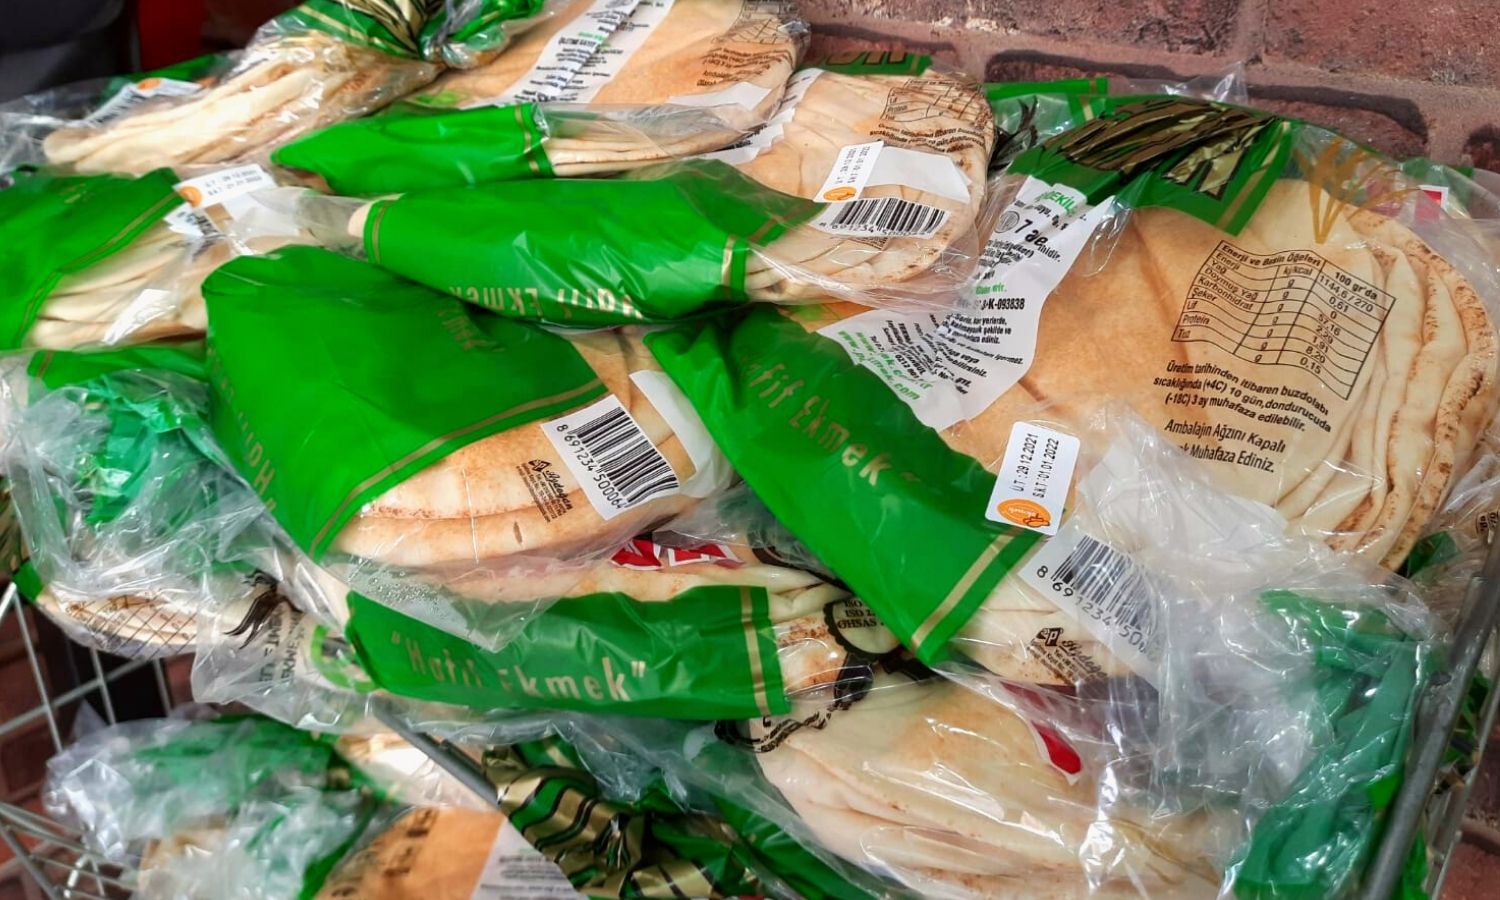 ربطات خبز سوري في بقالية باسطنبول 29 كانون الأول 2021 (عنب بلدي)